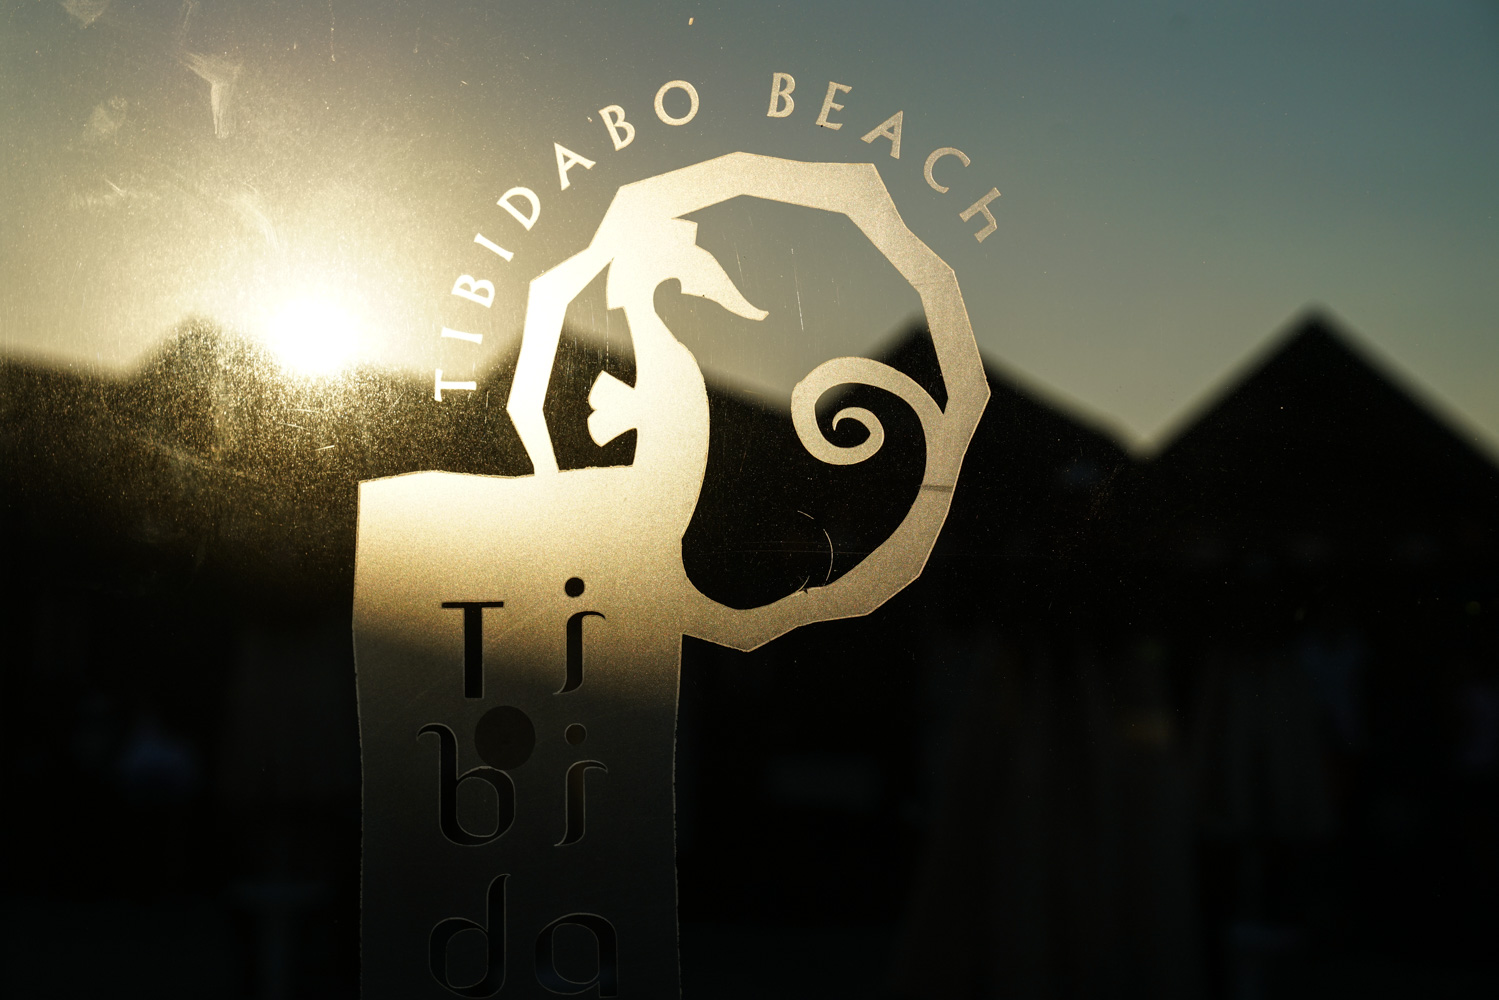 tibidabo beach